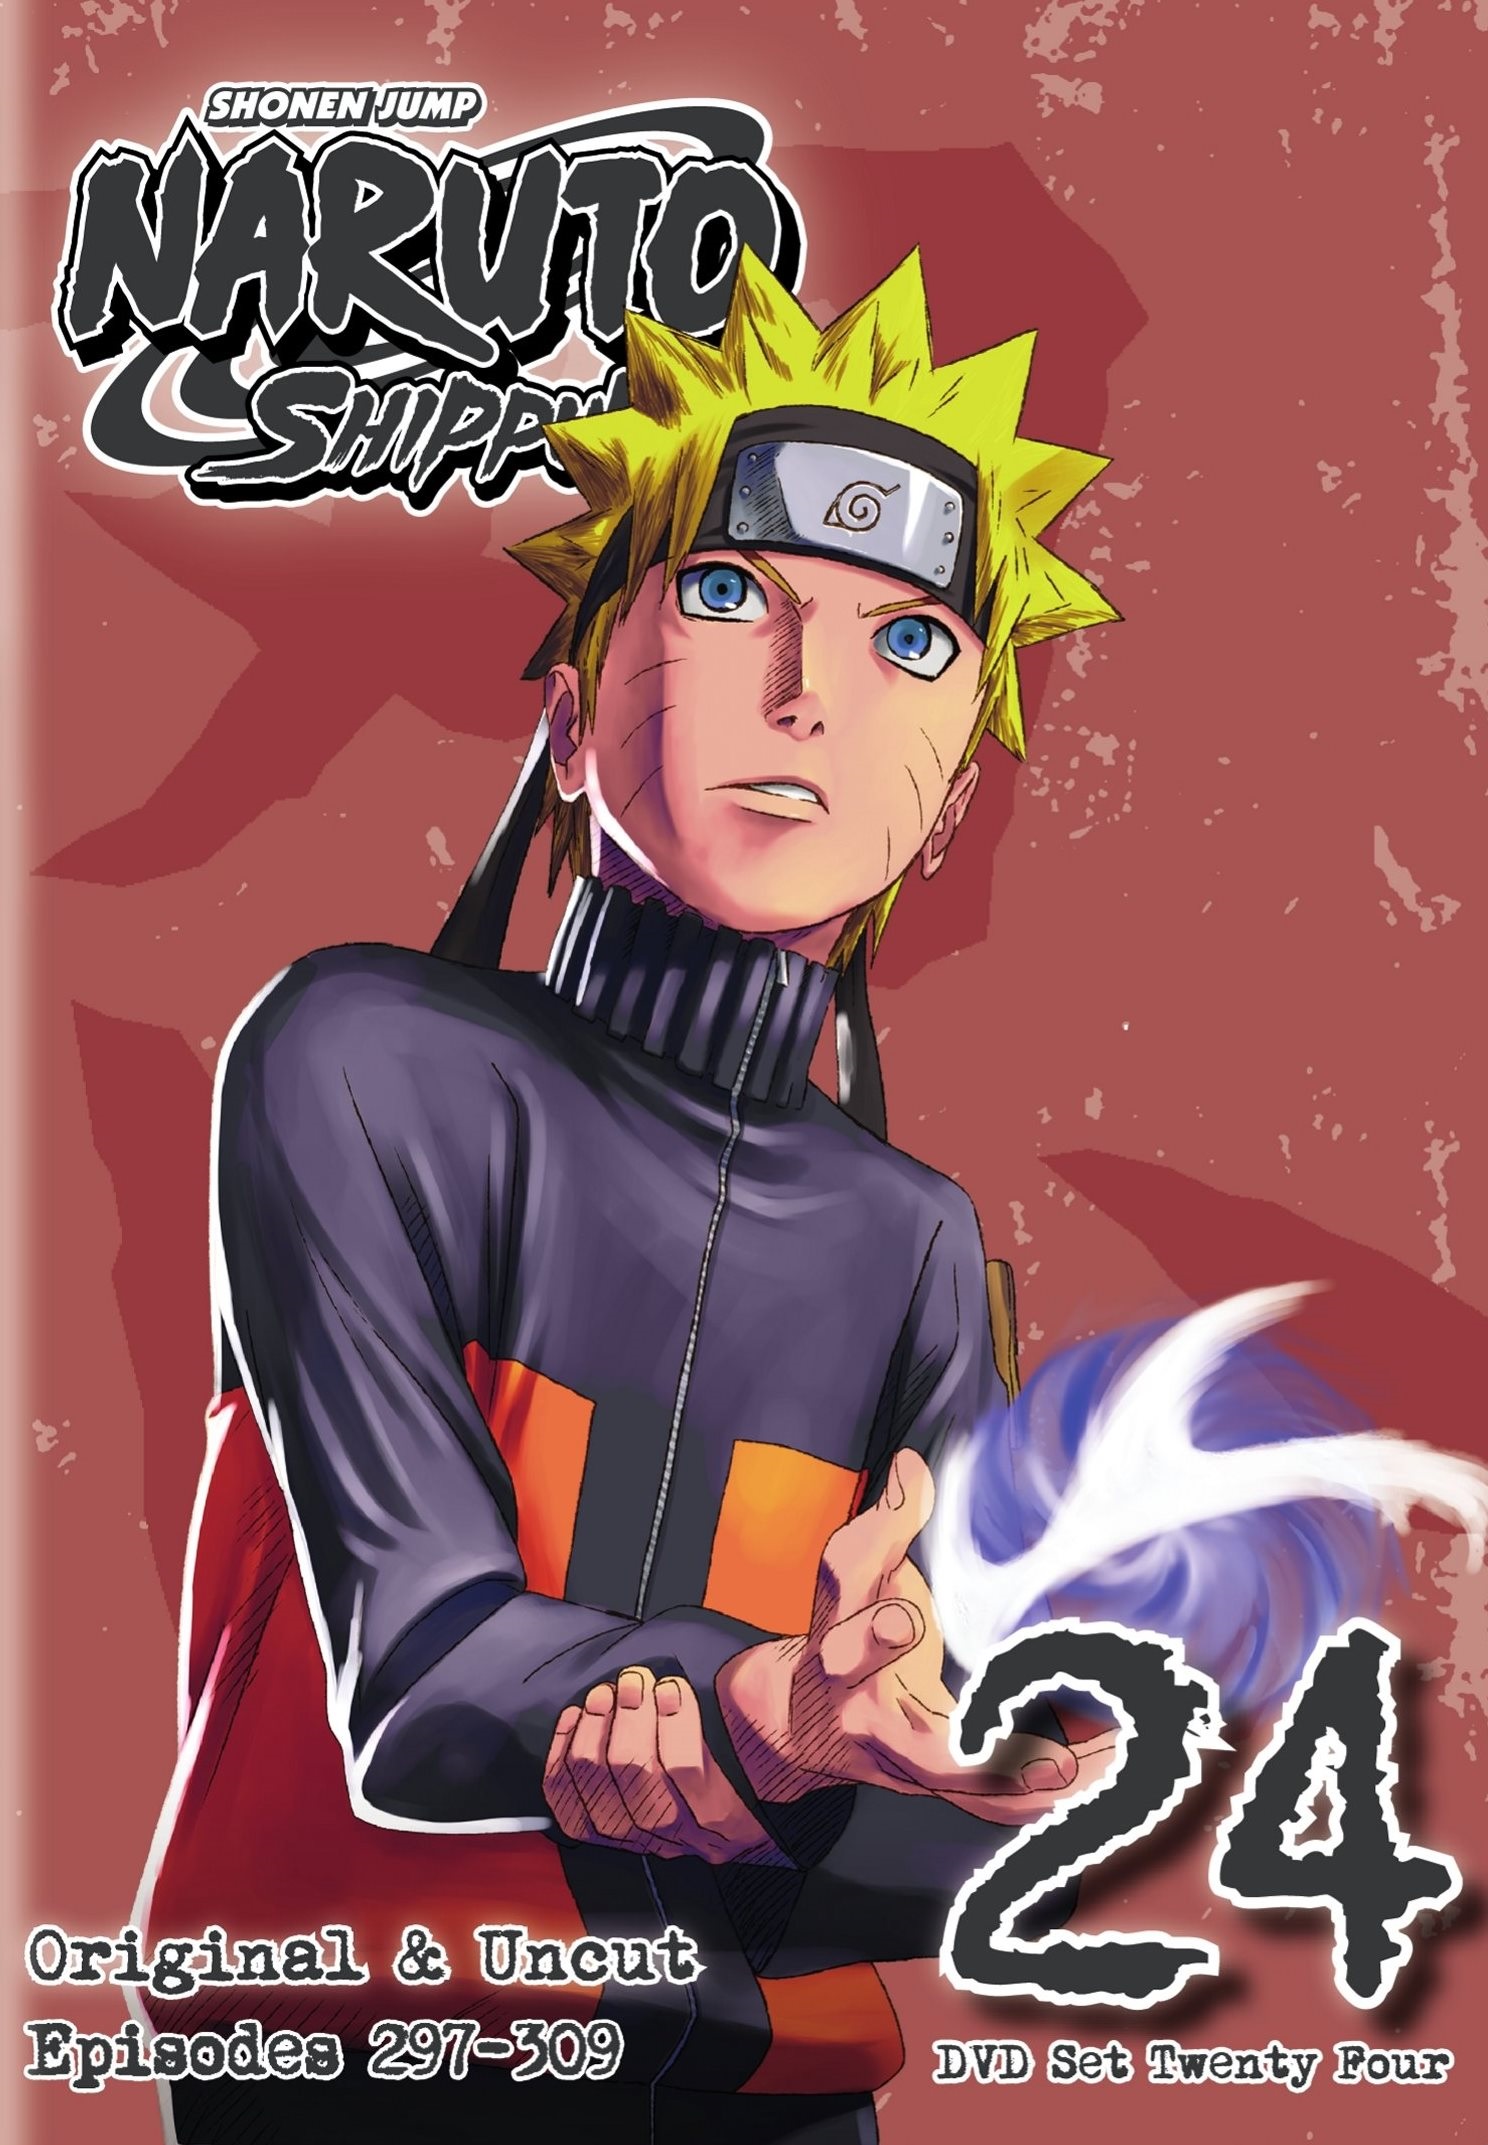 Naruto Shippuden ep 23, Naruto Shippuden ep 24